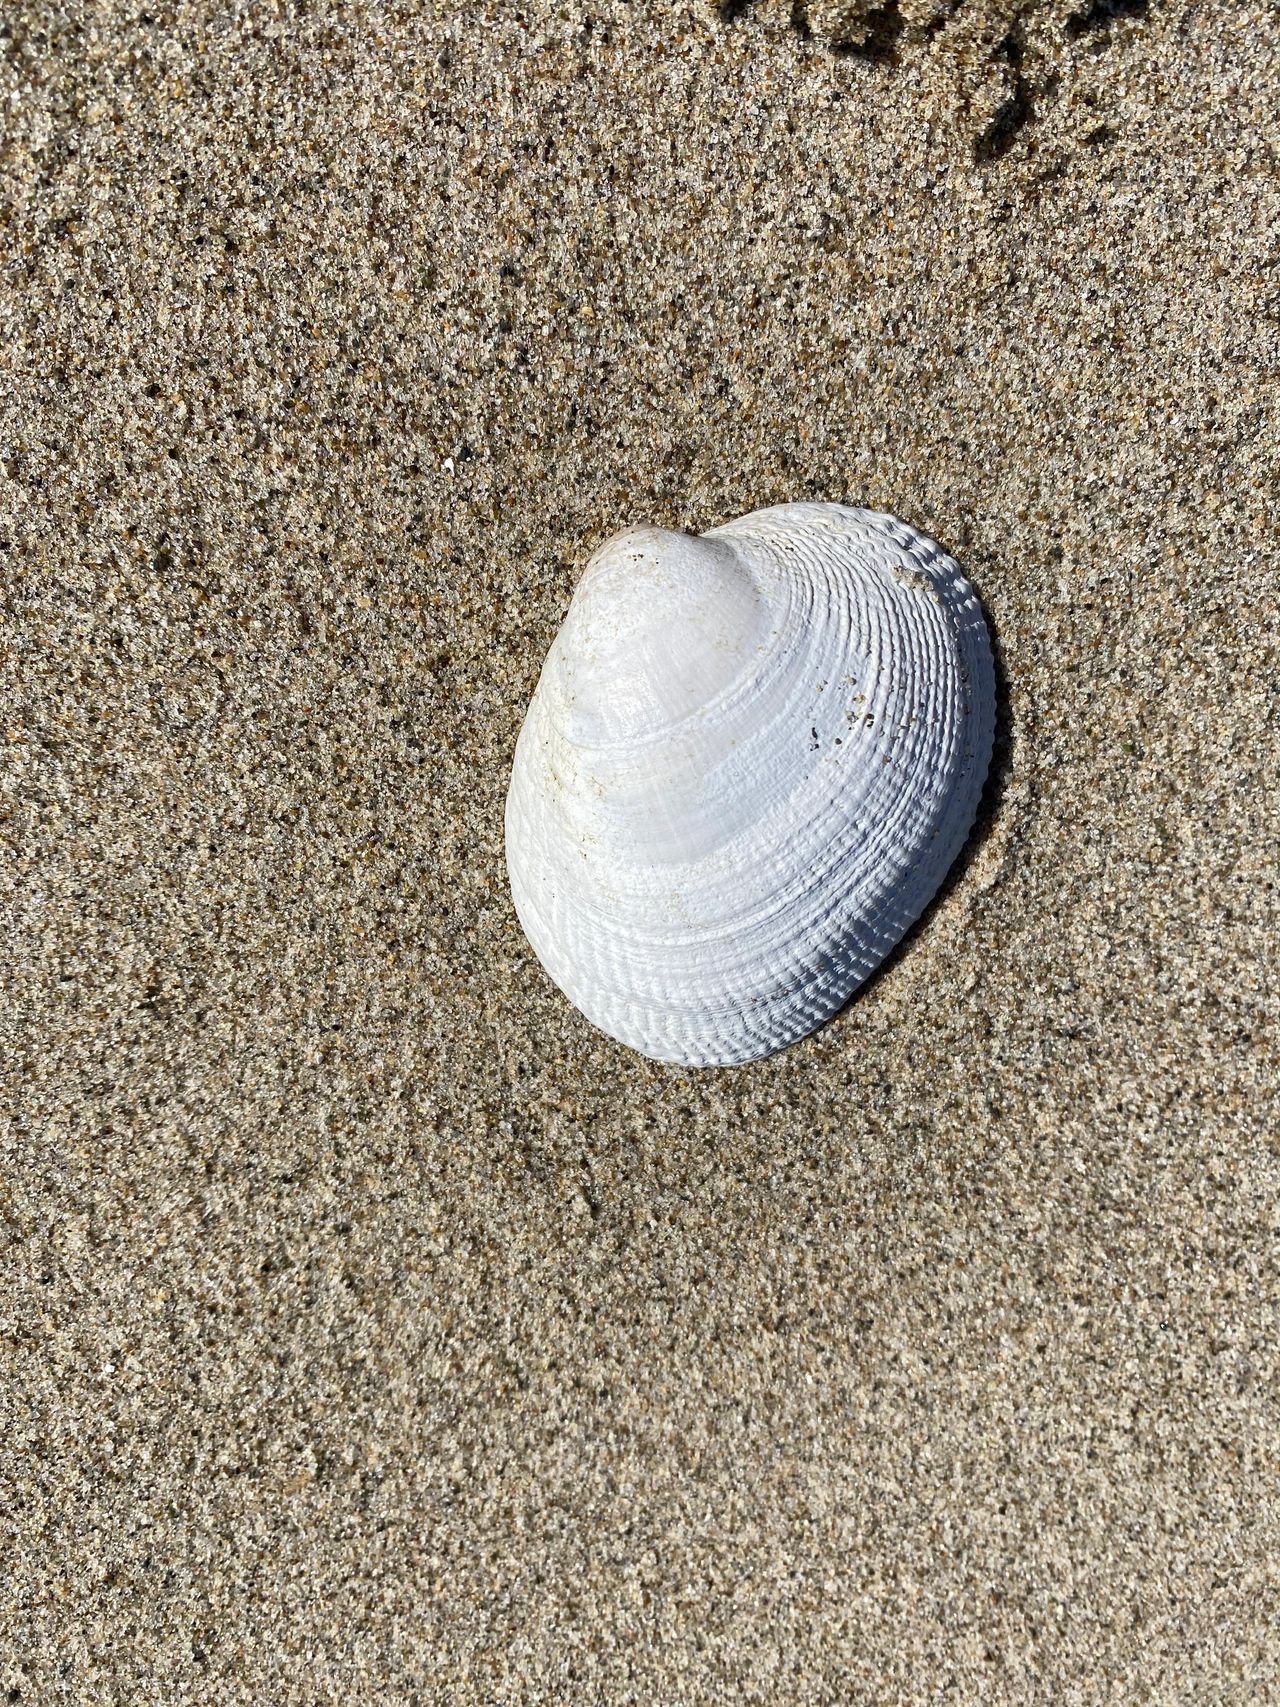 A WHOLE seashell!